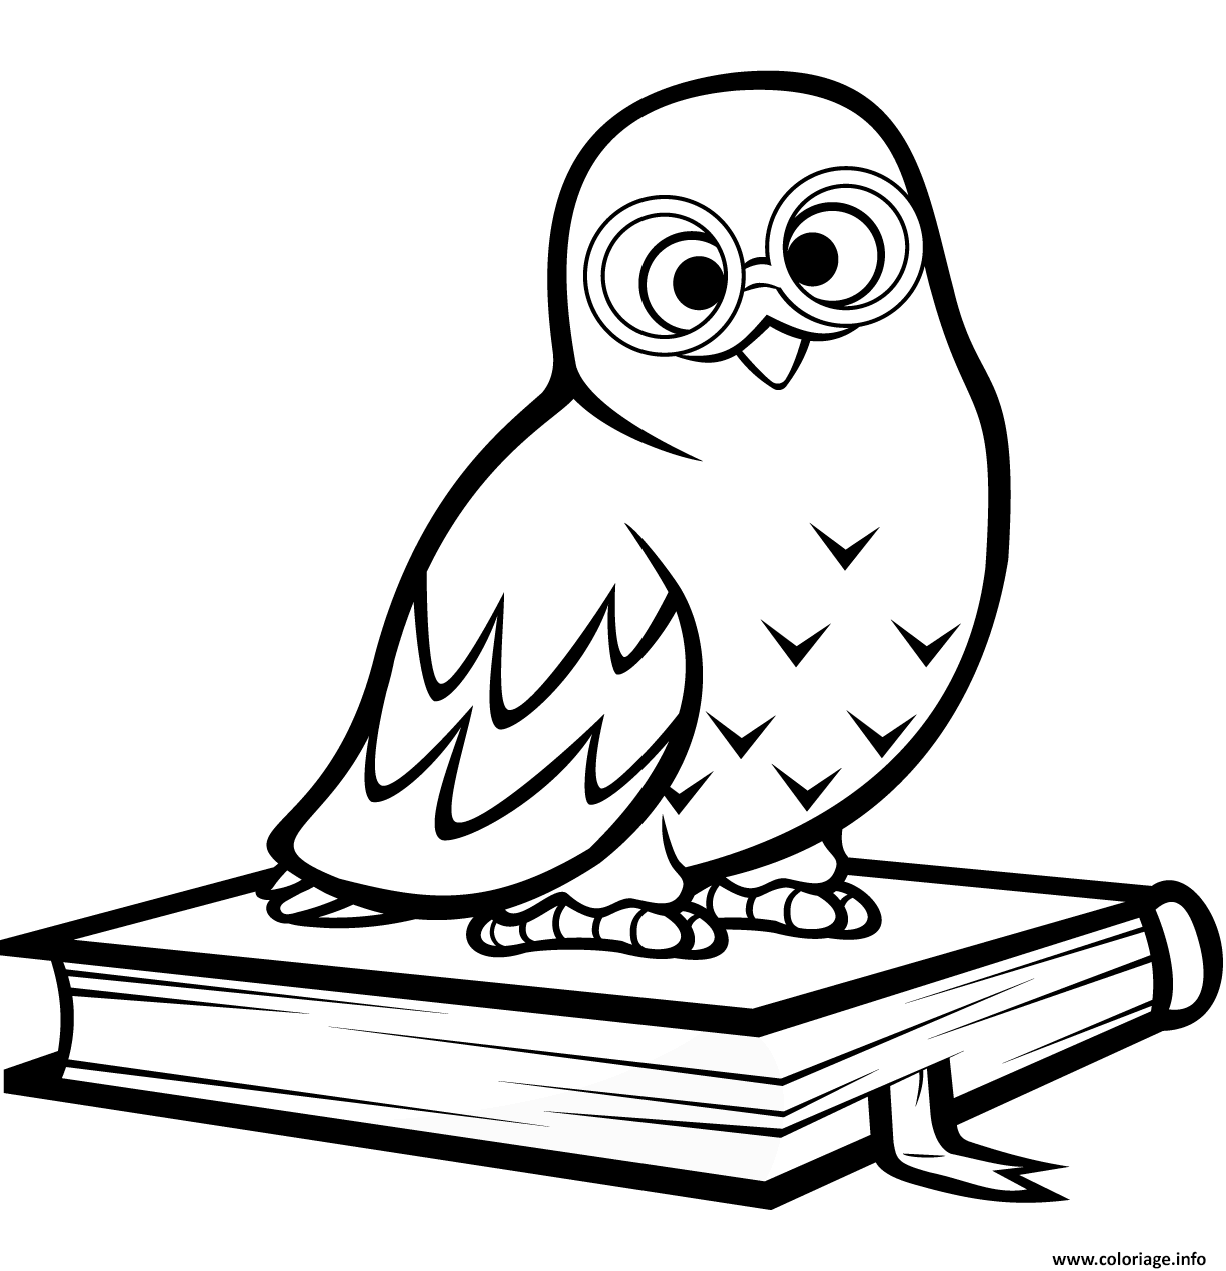 Dessin hibou polaire assis sur un livre Coloriage Gratuit à Imprimer